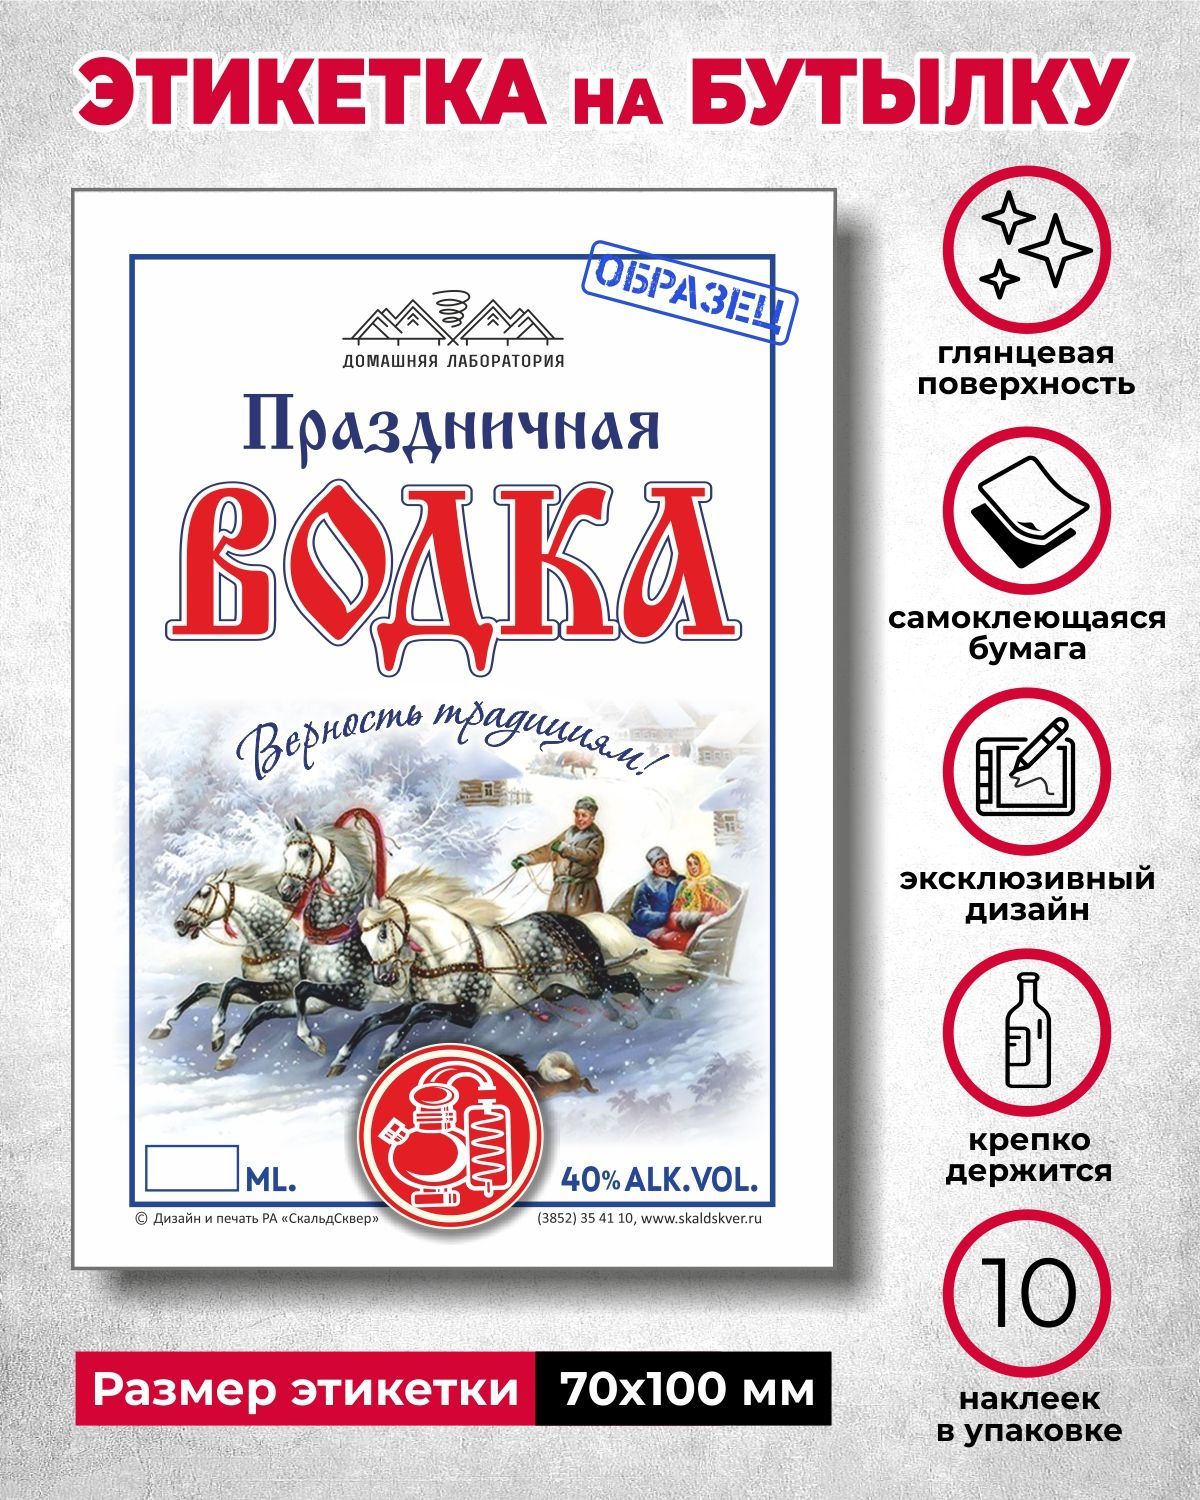 Этикетки на водку — заказать печать | Цена водочных этикеток в СПб и Москве